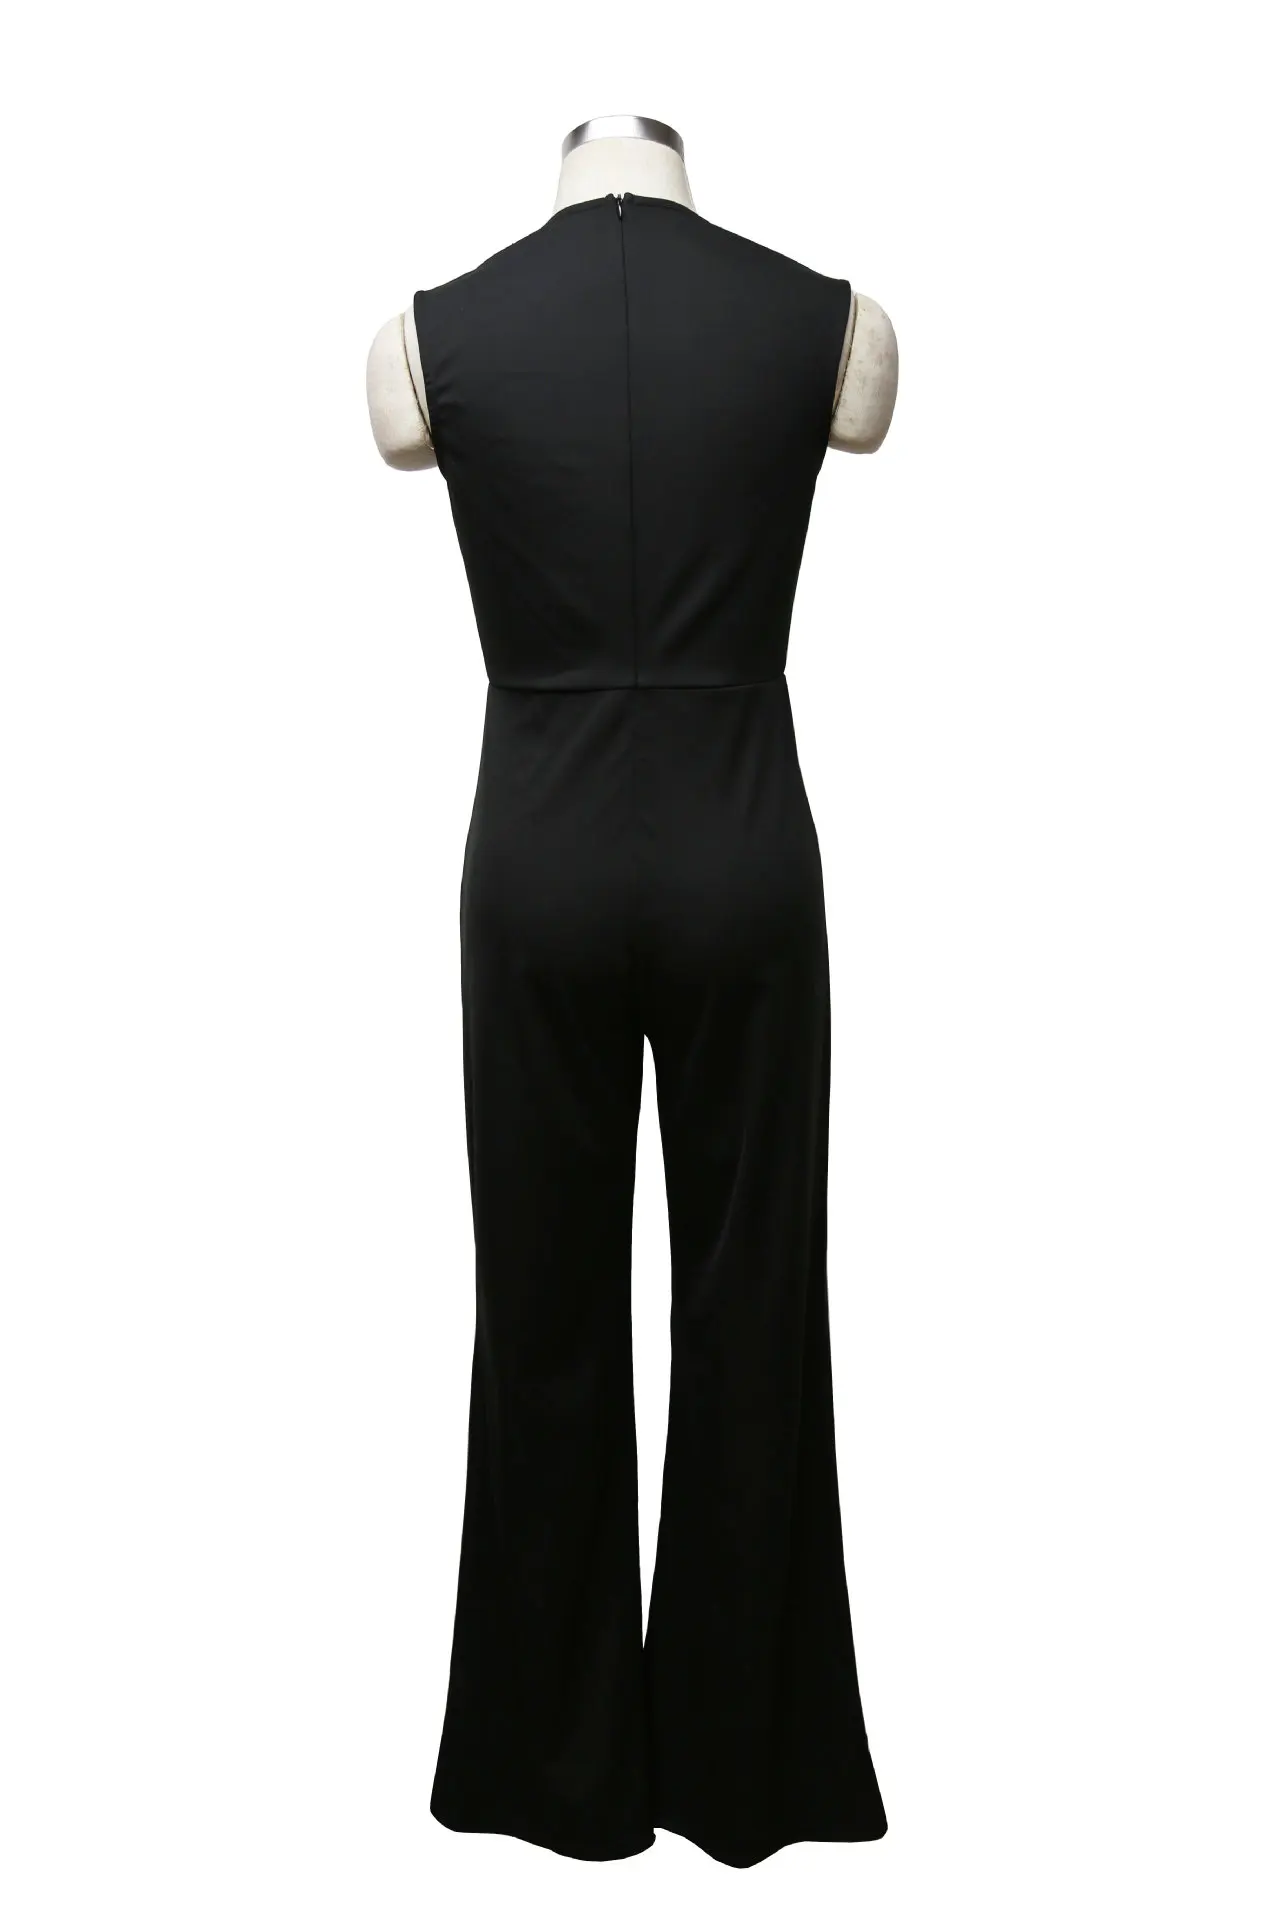 Женский комбинезон, однотонные черные узкие брюки с квадратным воротником, расклешенные брюки, Длинные однотонные брюки со средней талией, уличная одежда